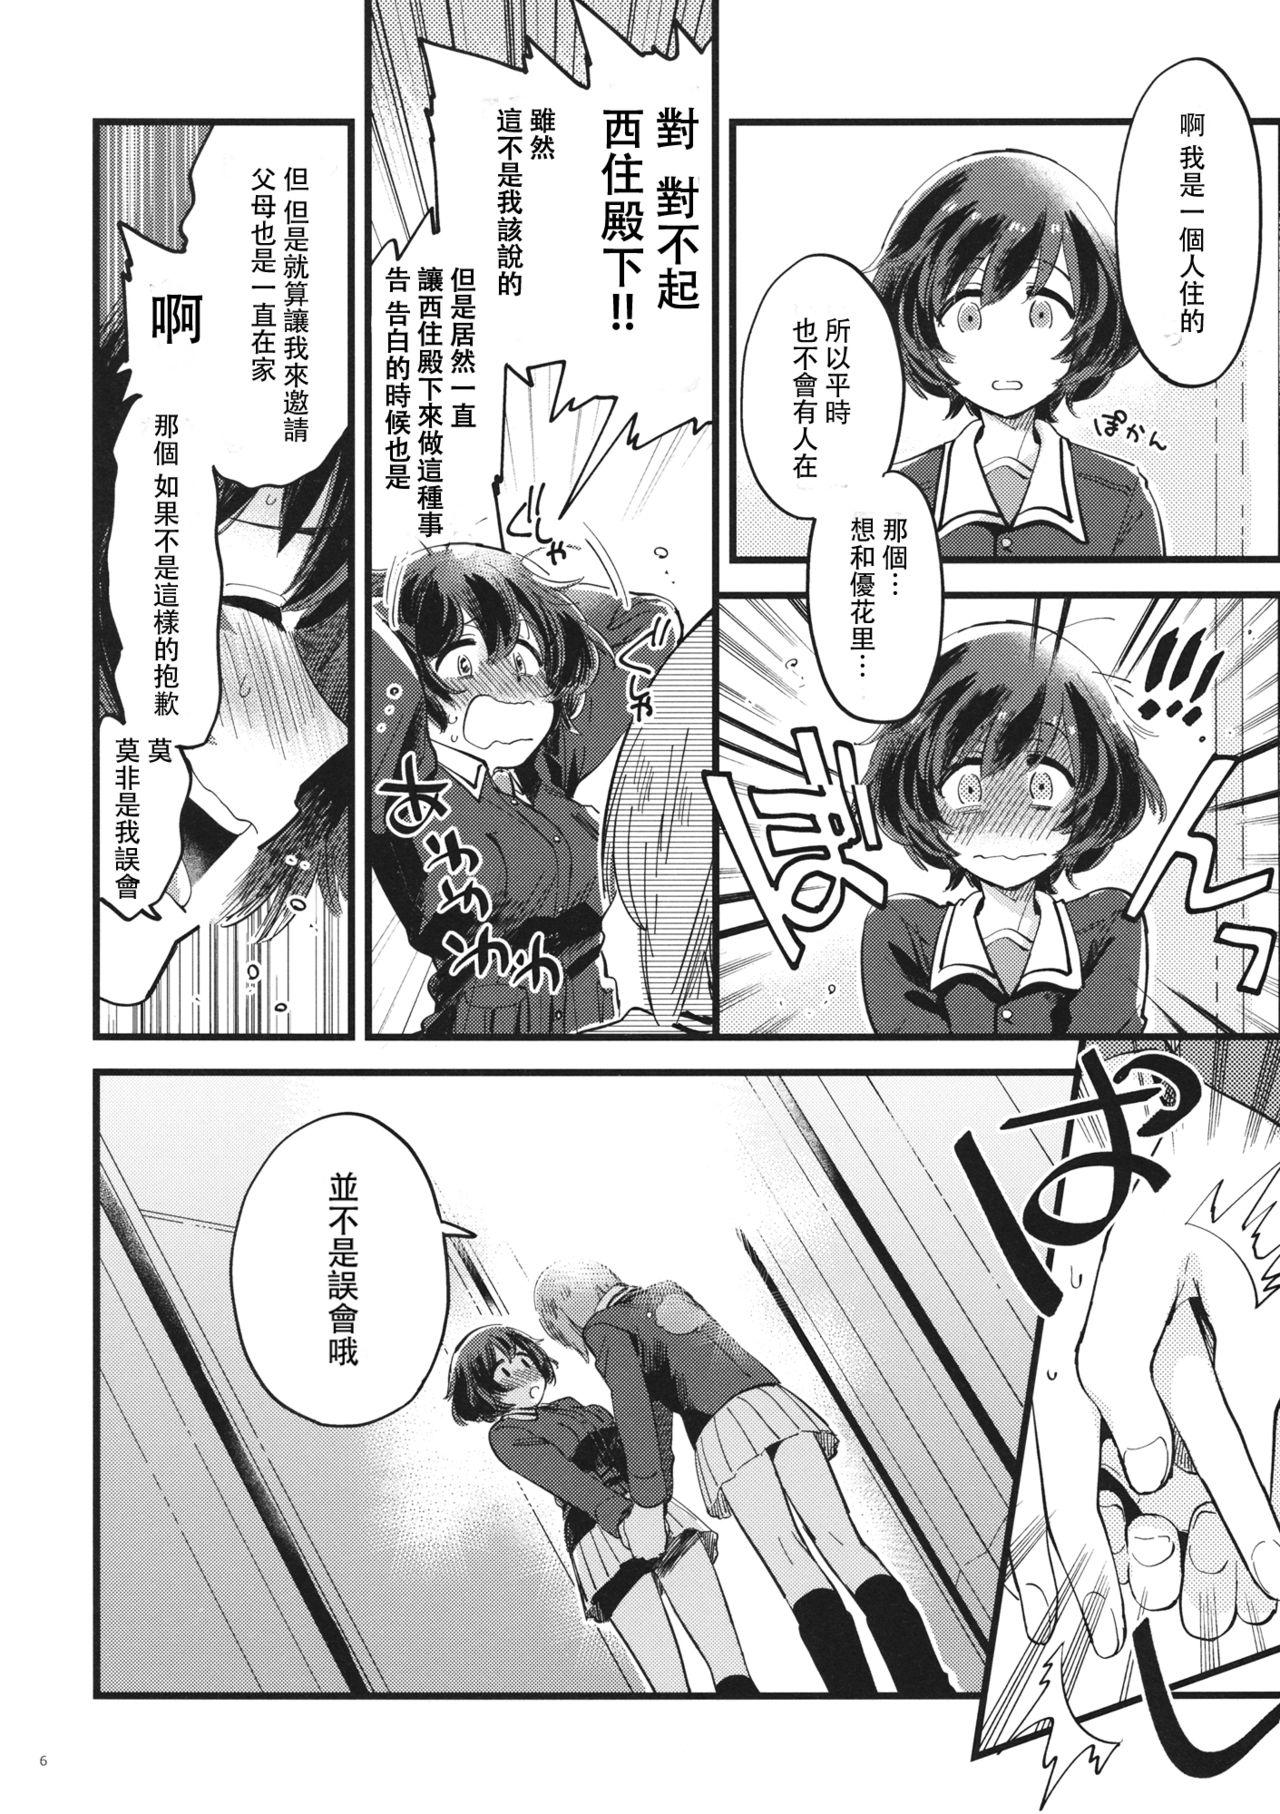 Vagina Yasashiku, Sawatte, Oku made Furete. - Girls und panzer Spreading - Page 6